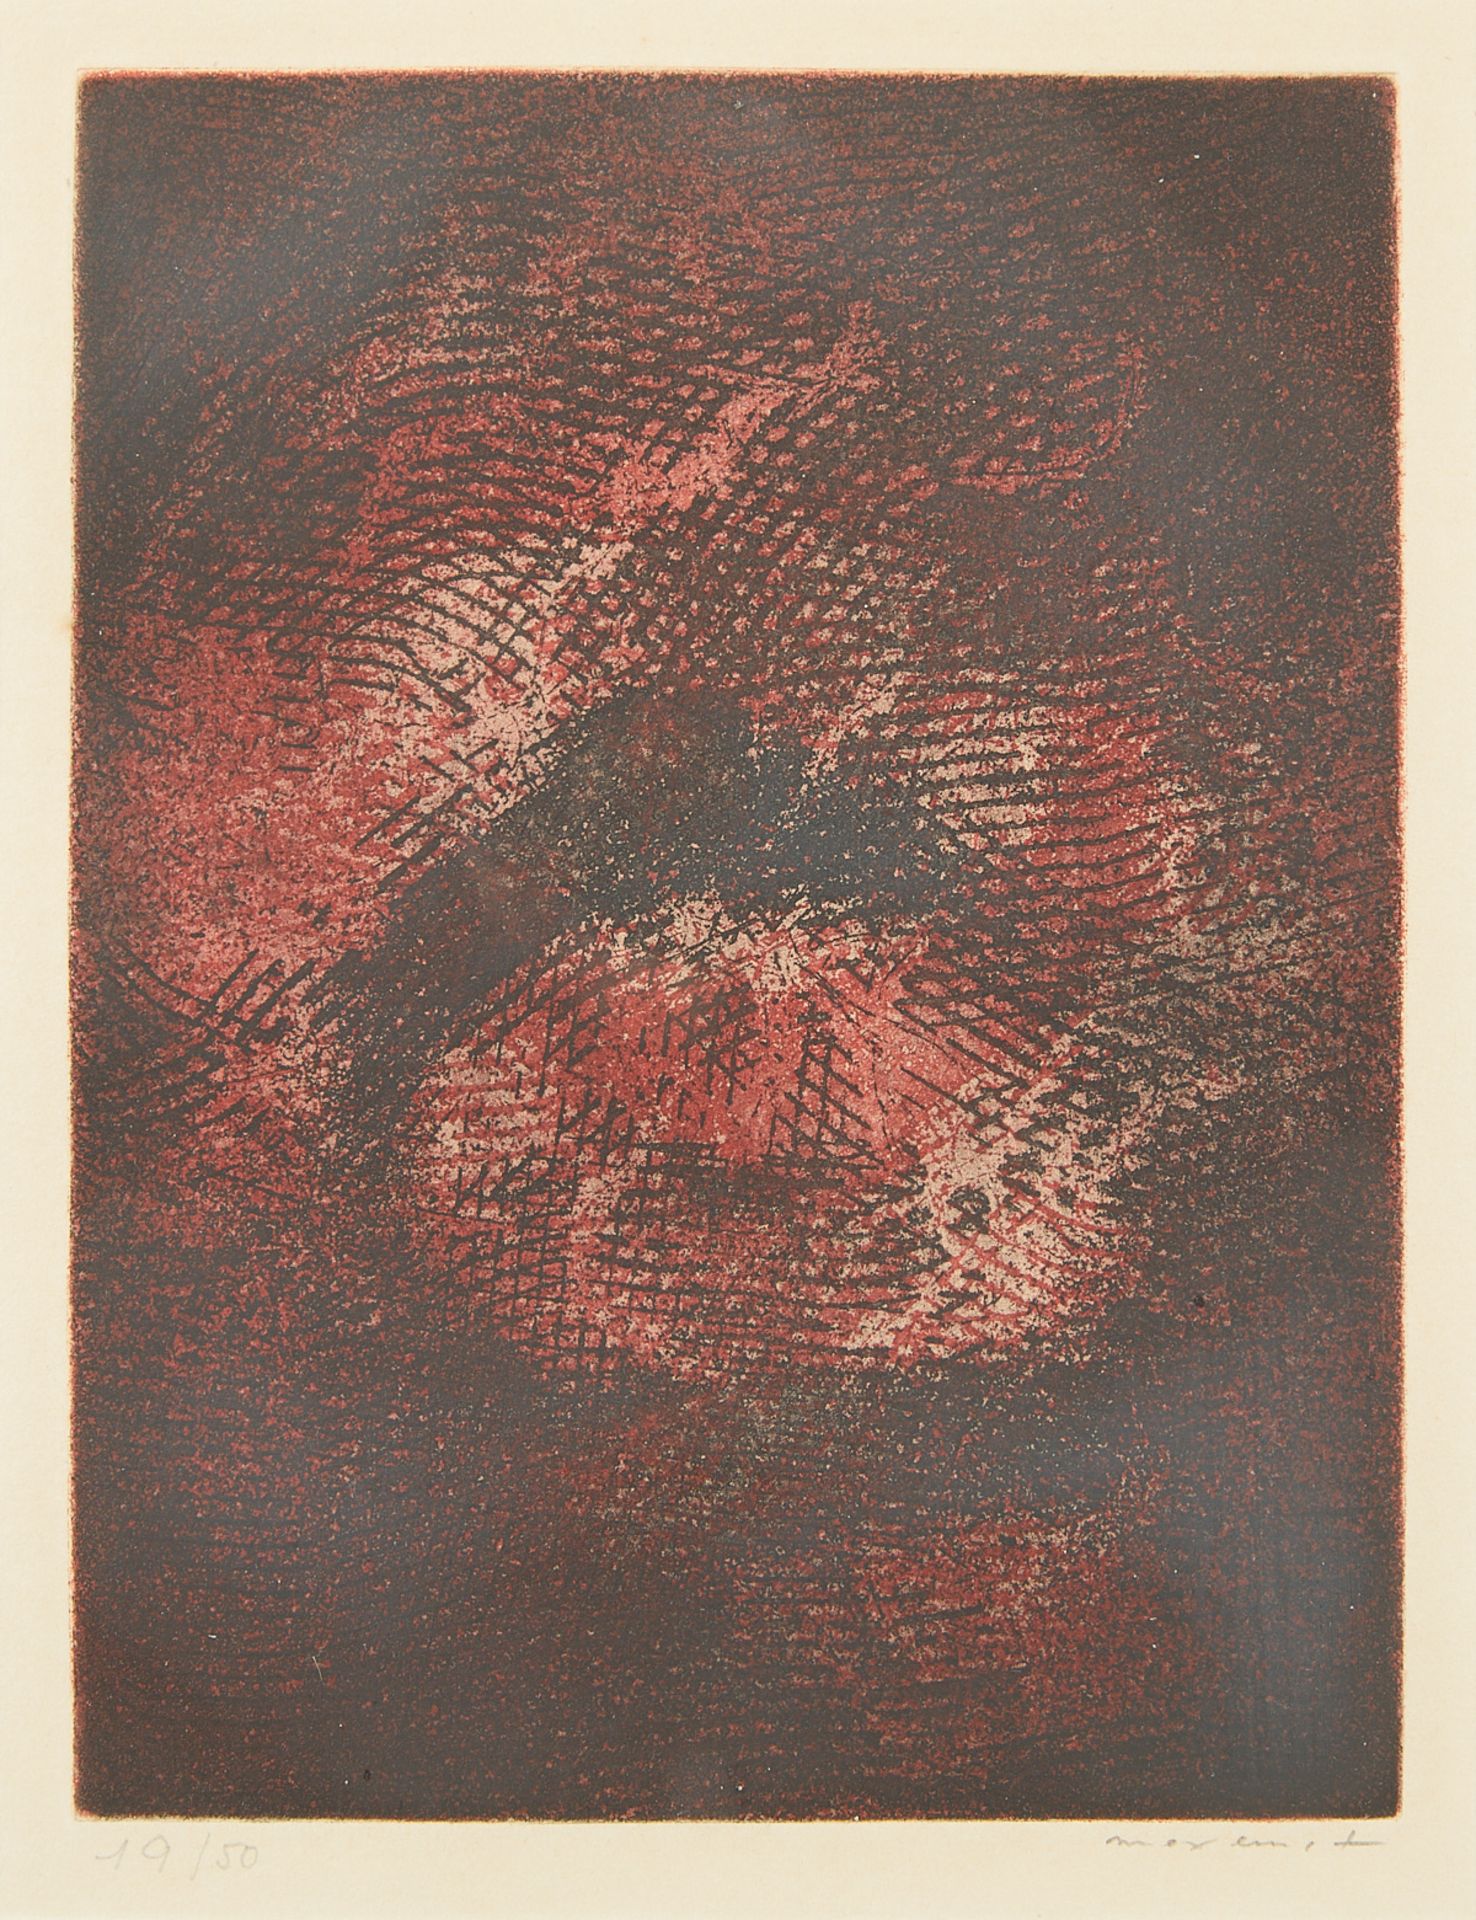 Max Ernst "Paroles Peintes I" Aquatint 1962